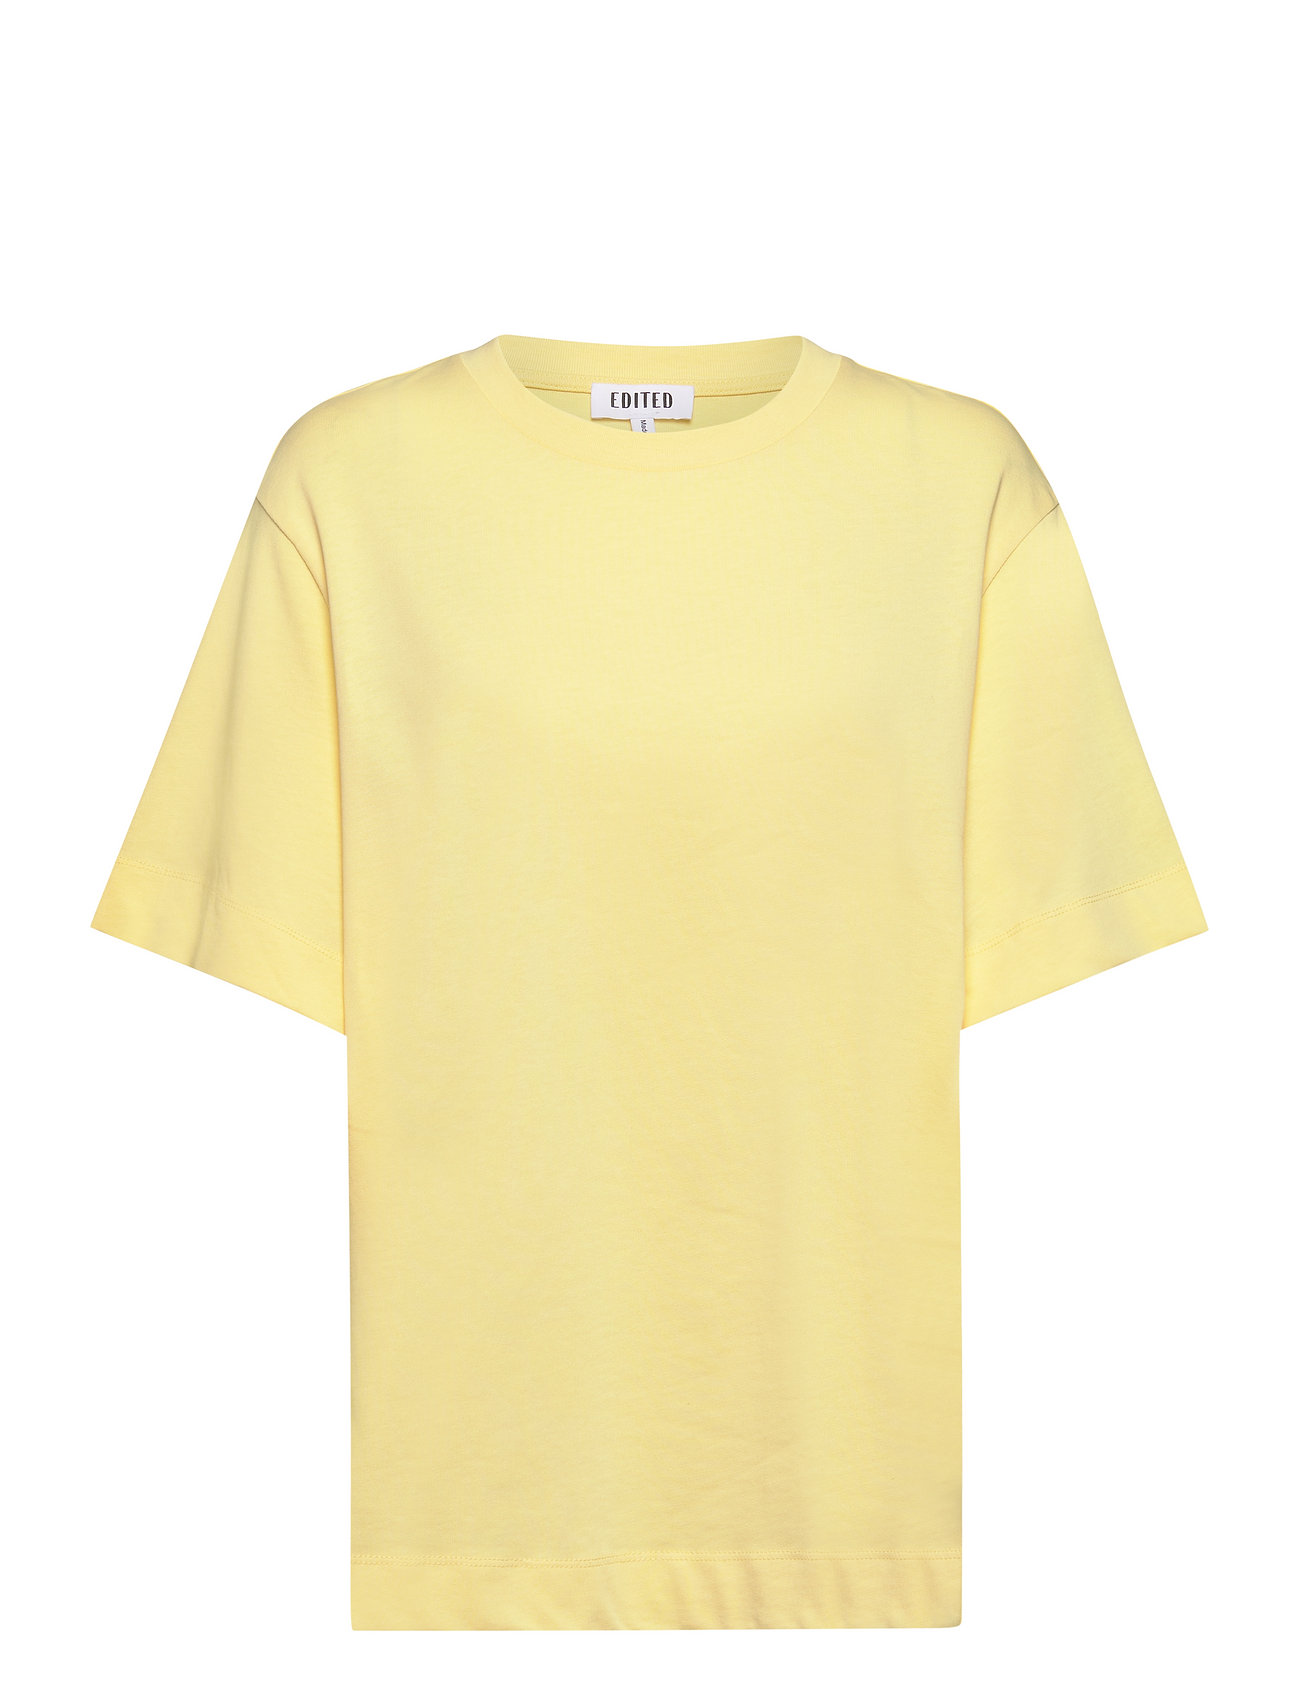 Elisa T-Shirt T-shirts & Tops Short-sleeved Gul EDITED